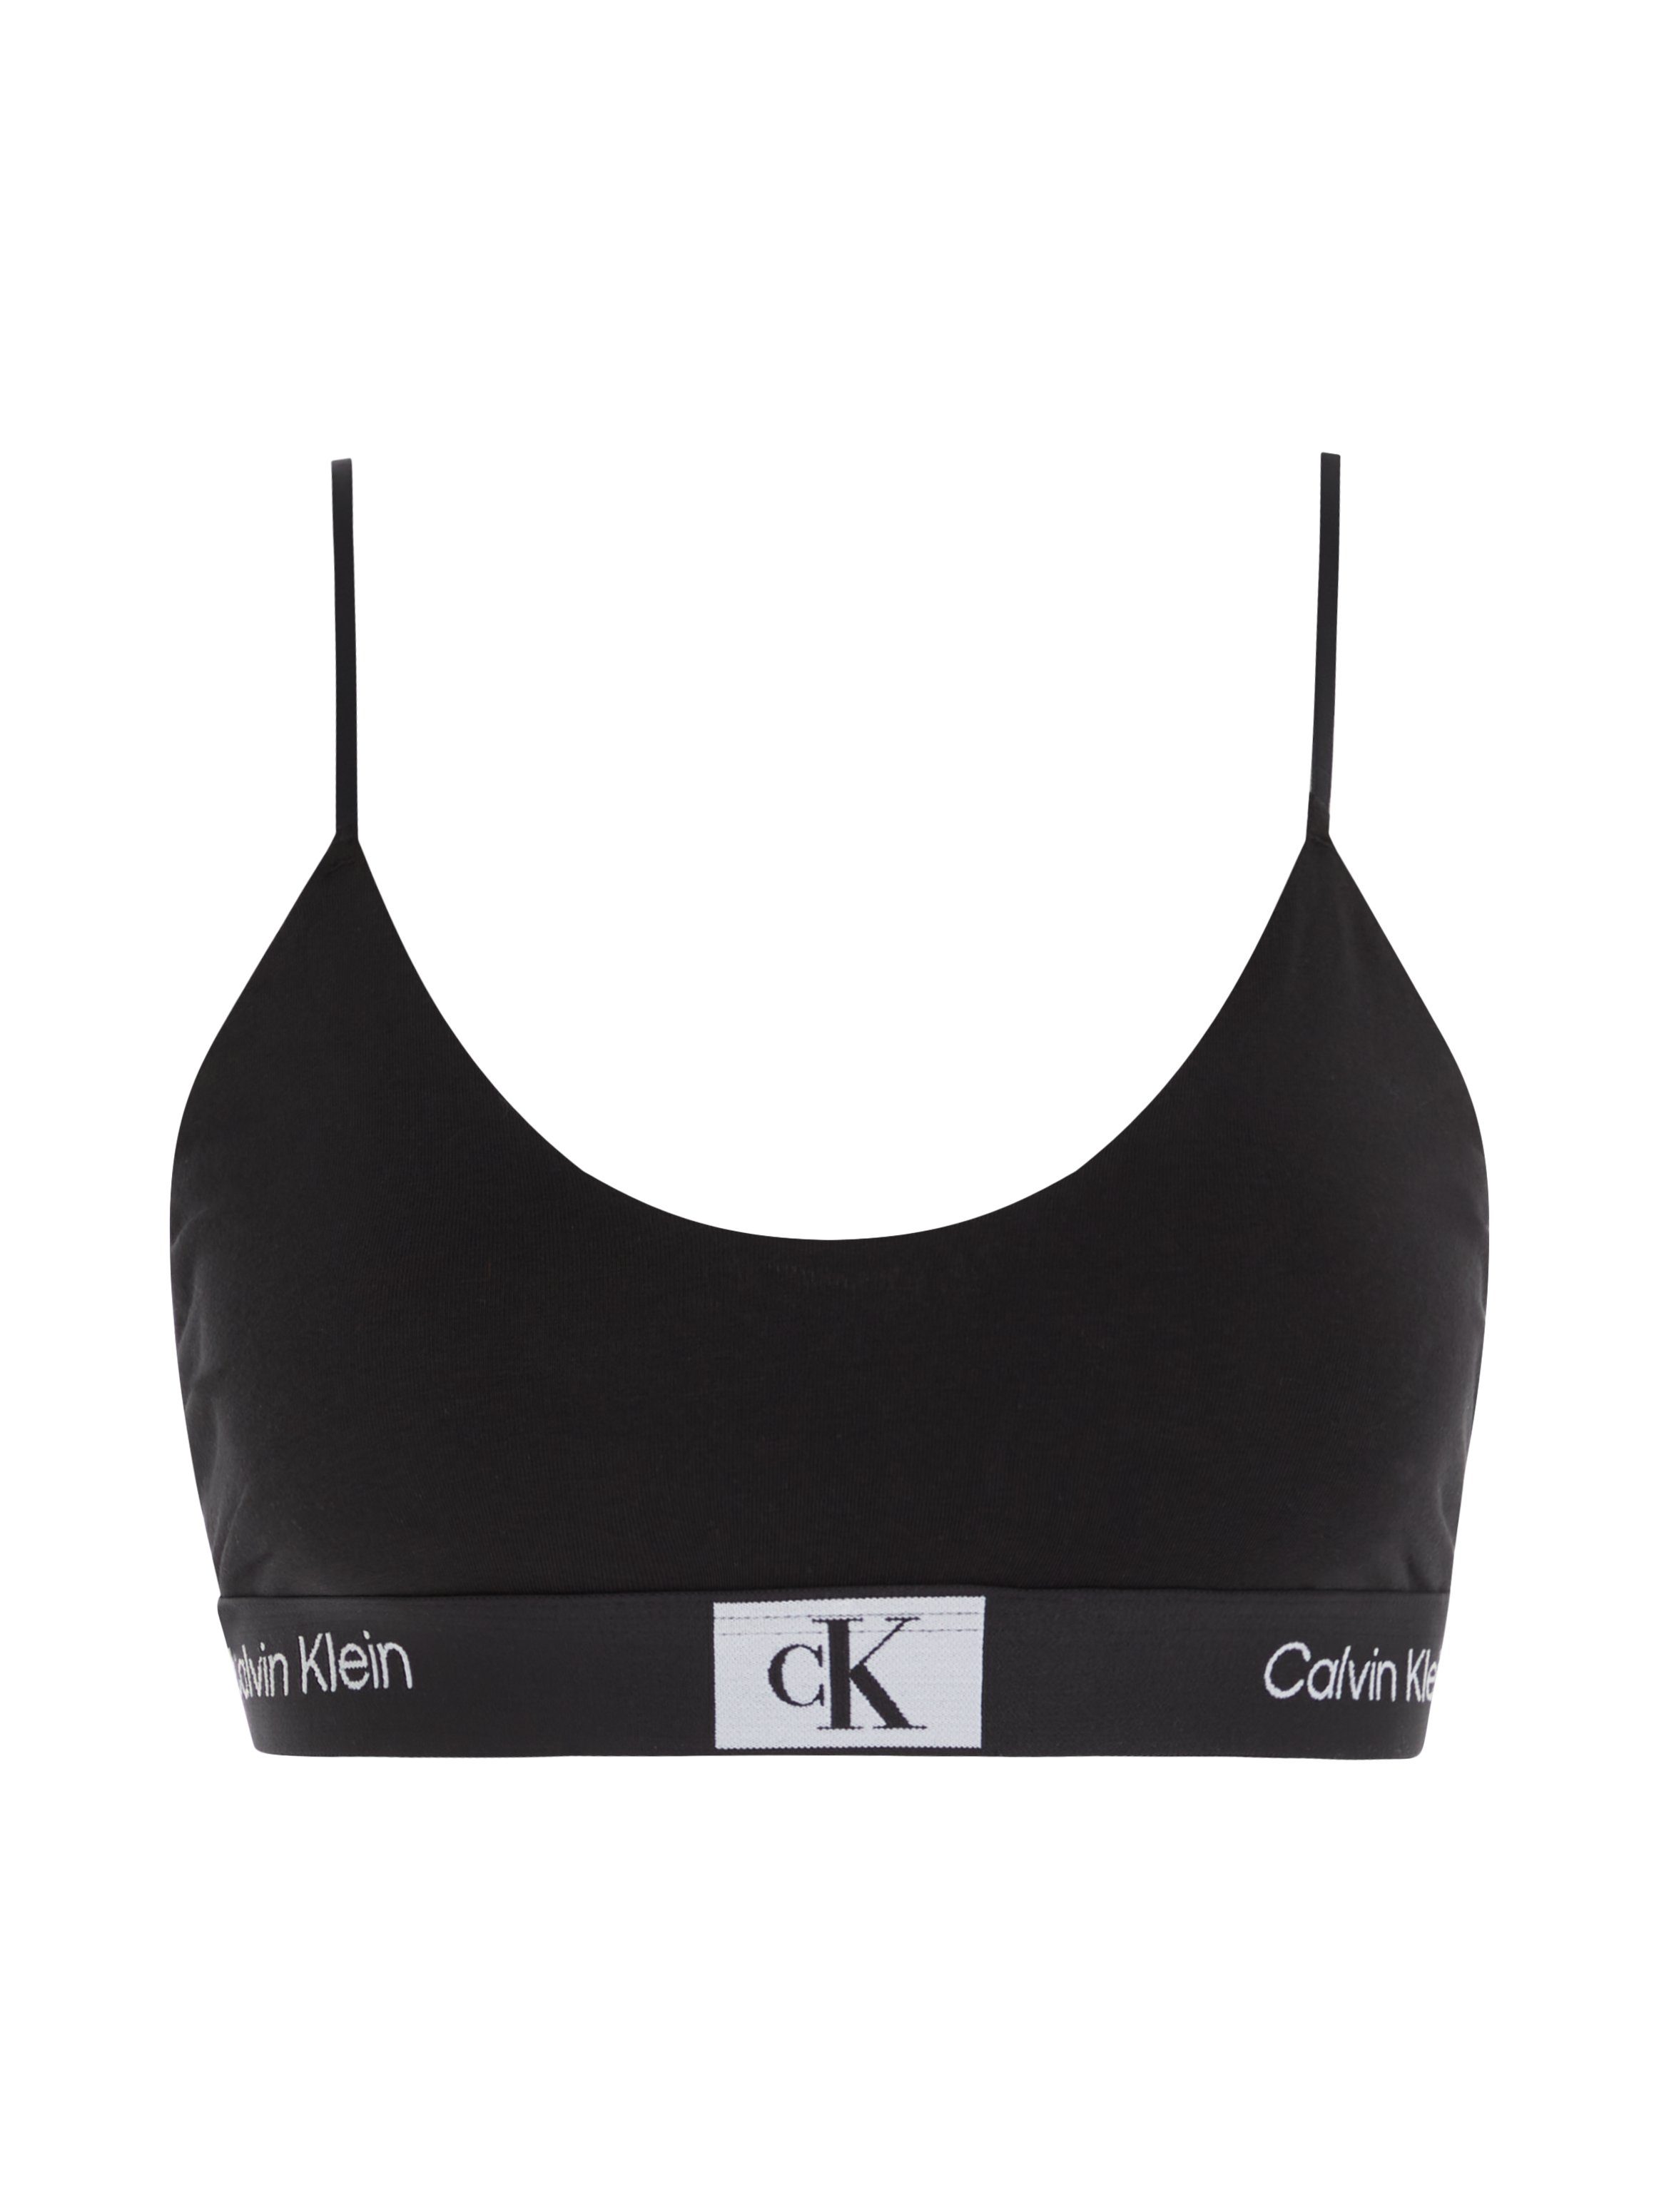 Calvin Klein Underwear Bralette-BH Alloverprint UNLINED BRALETTE BLACK mit